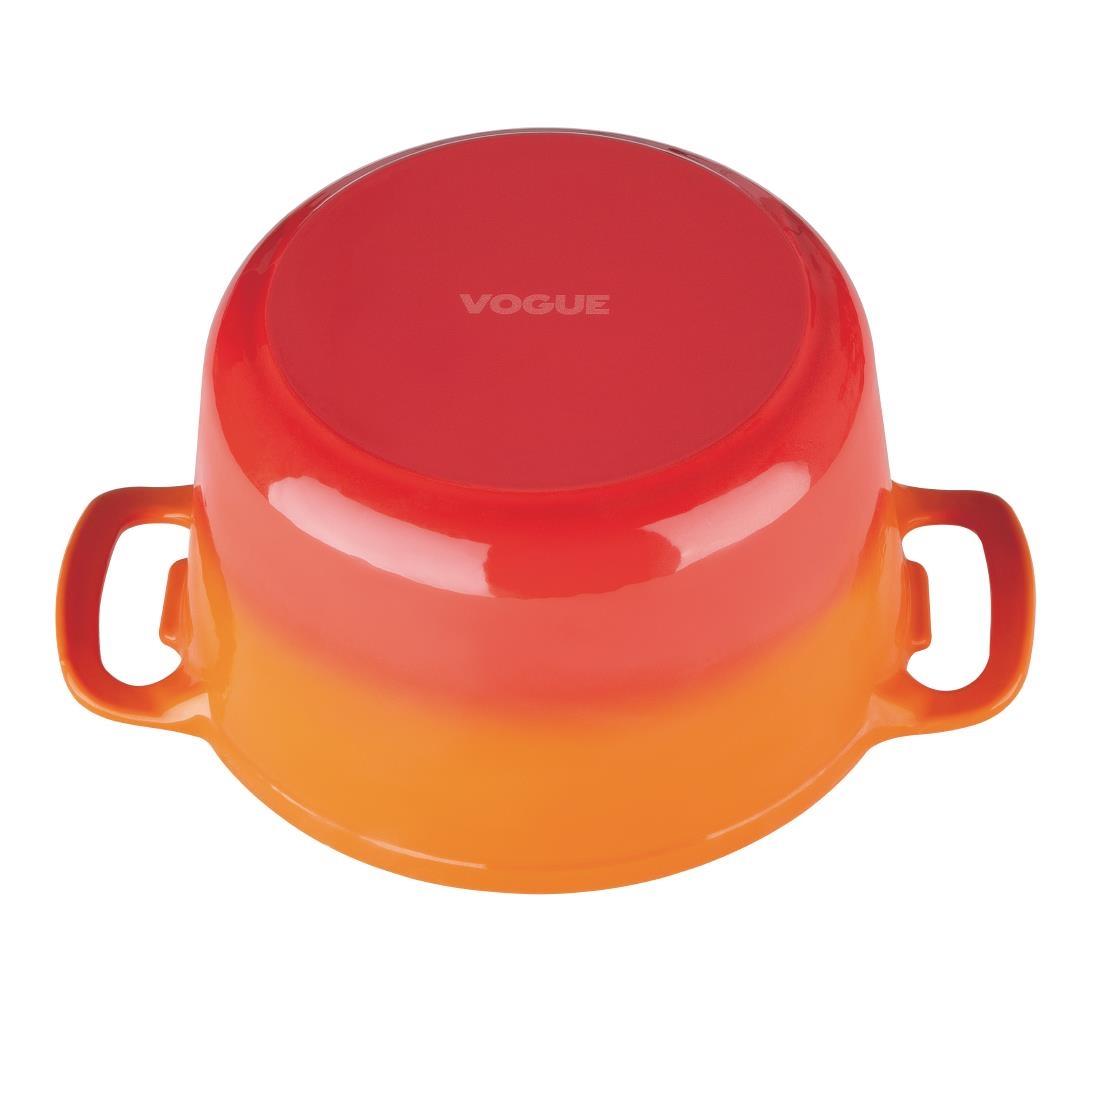 Vogue Orange Round Casserole Dish 3.2Ltr - GH302  - 6